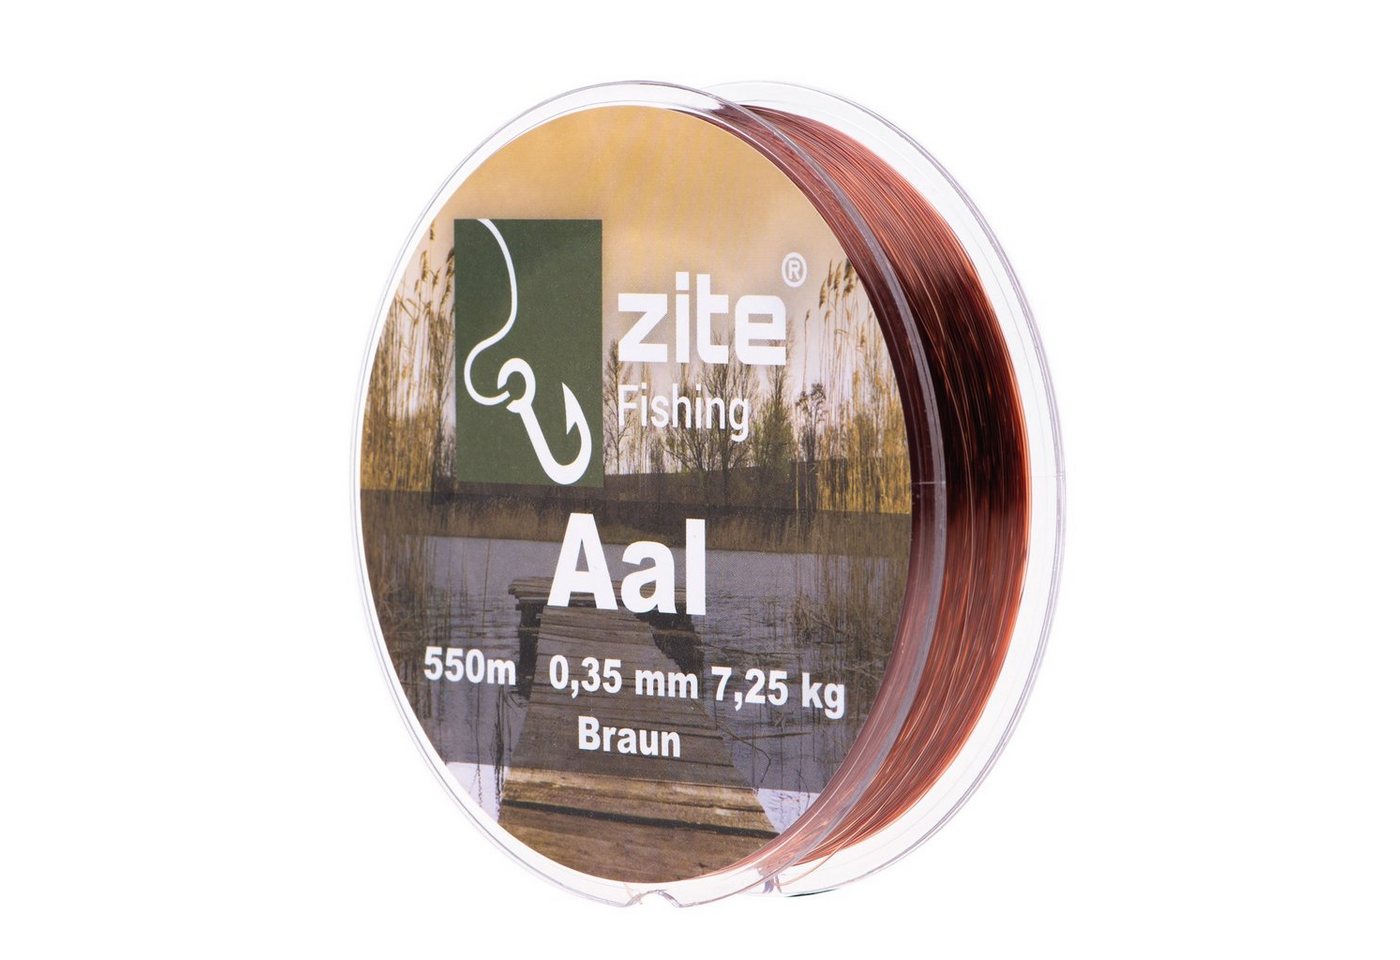 Zite Angelschnur Monofile Aalschnur 0,35mm in Braun - 550m Spule - Grund- & Posenangeln von Zite